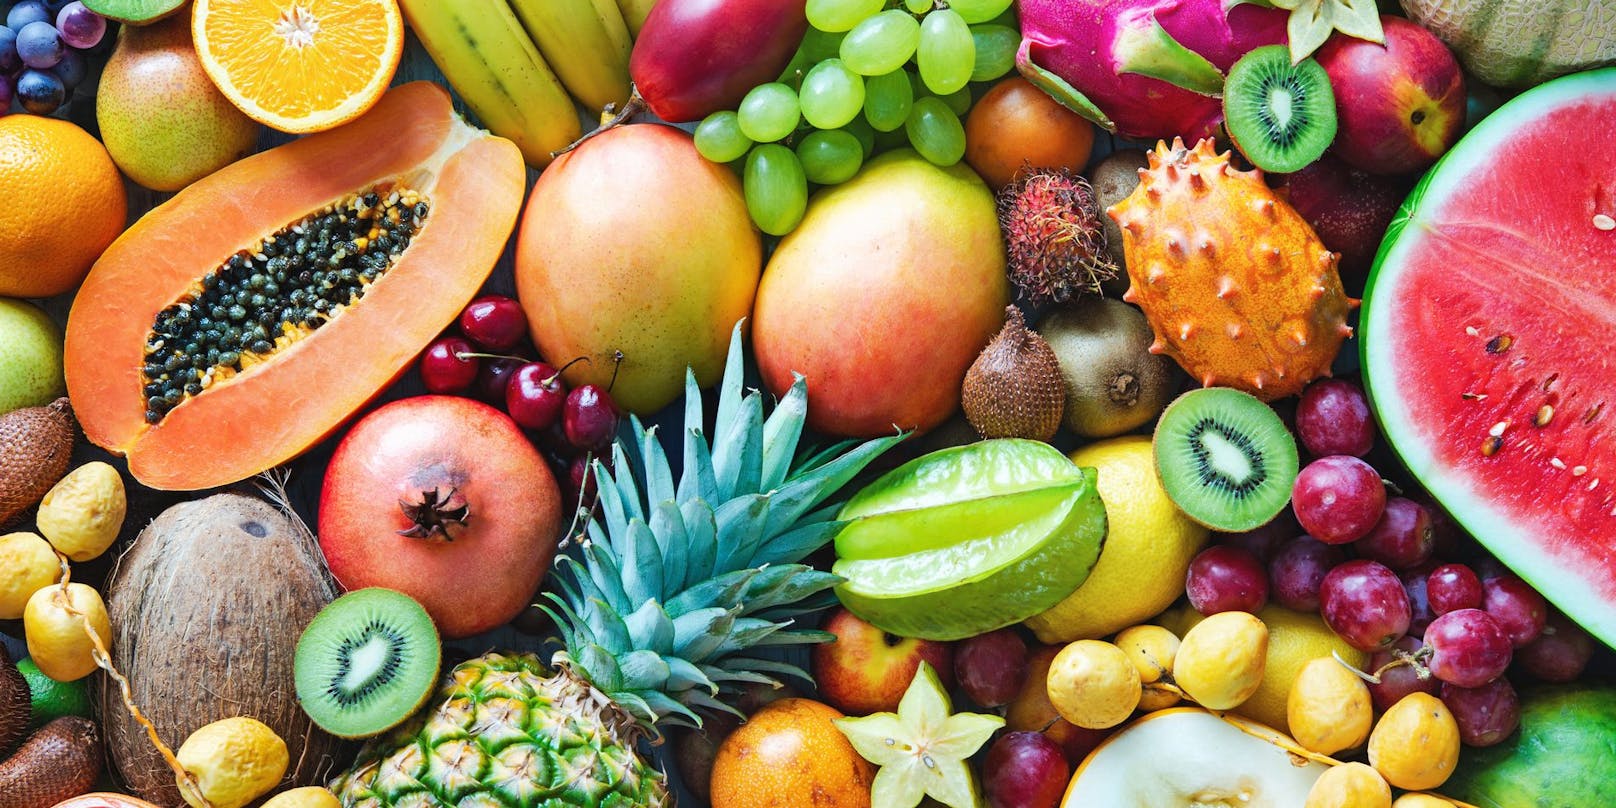 Exotische Früchte haben nicht nur einen langen Transportweg hinter sich, vor allem Produkte aus konventionellem Anbau sind meist stark mit Pestiziden belastet.